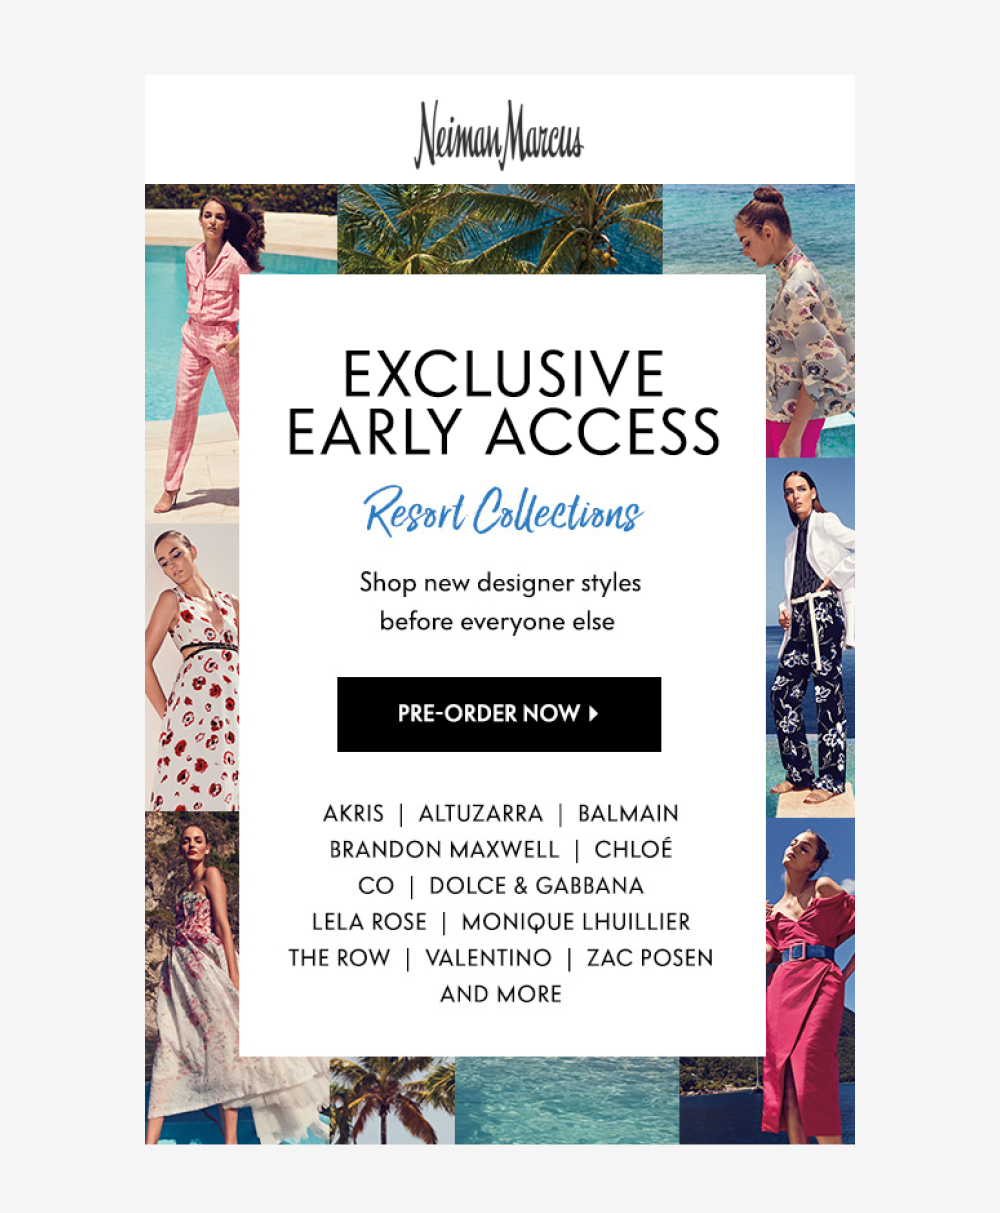 Swim & Sun Resort, Swim and Activewear, Web Design, Jessica Oviedo